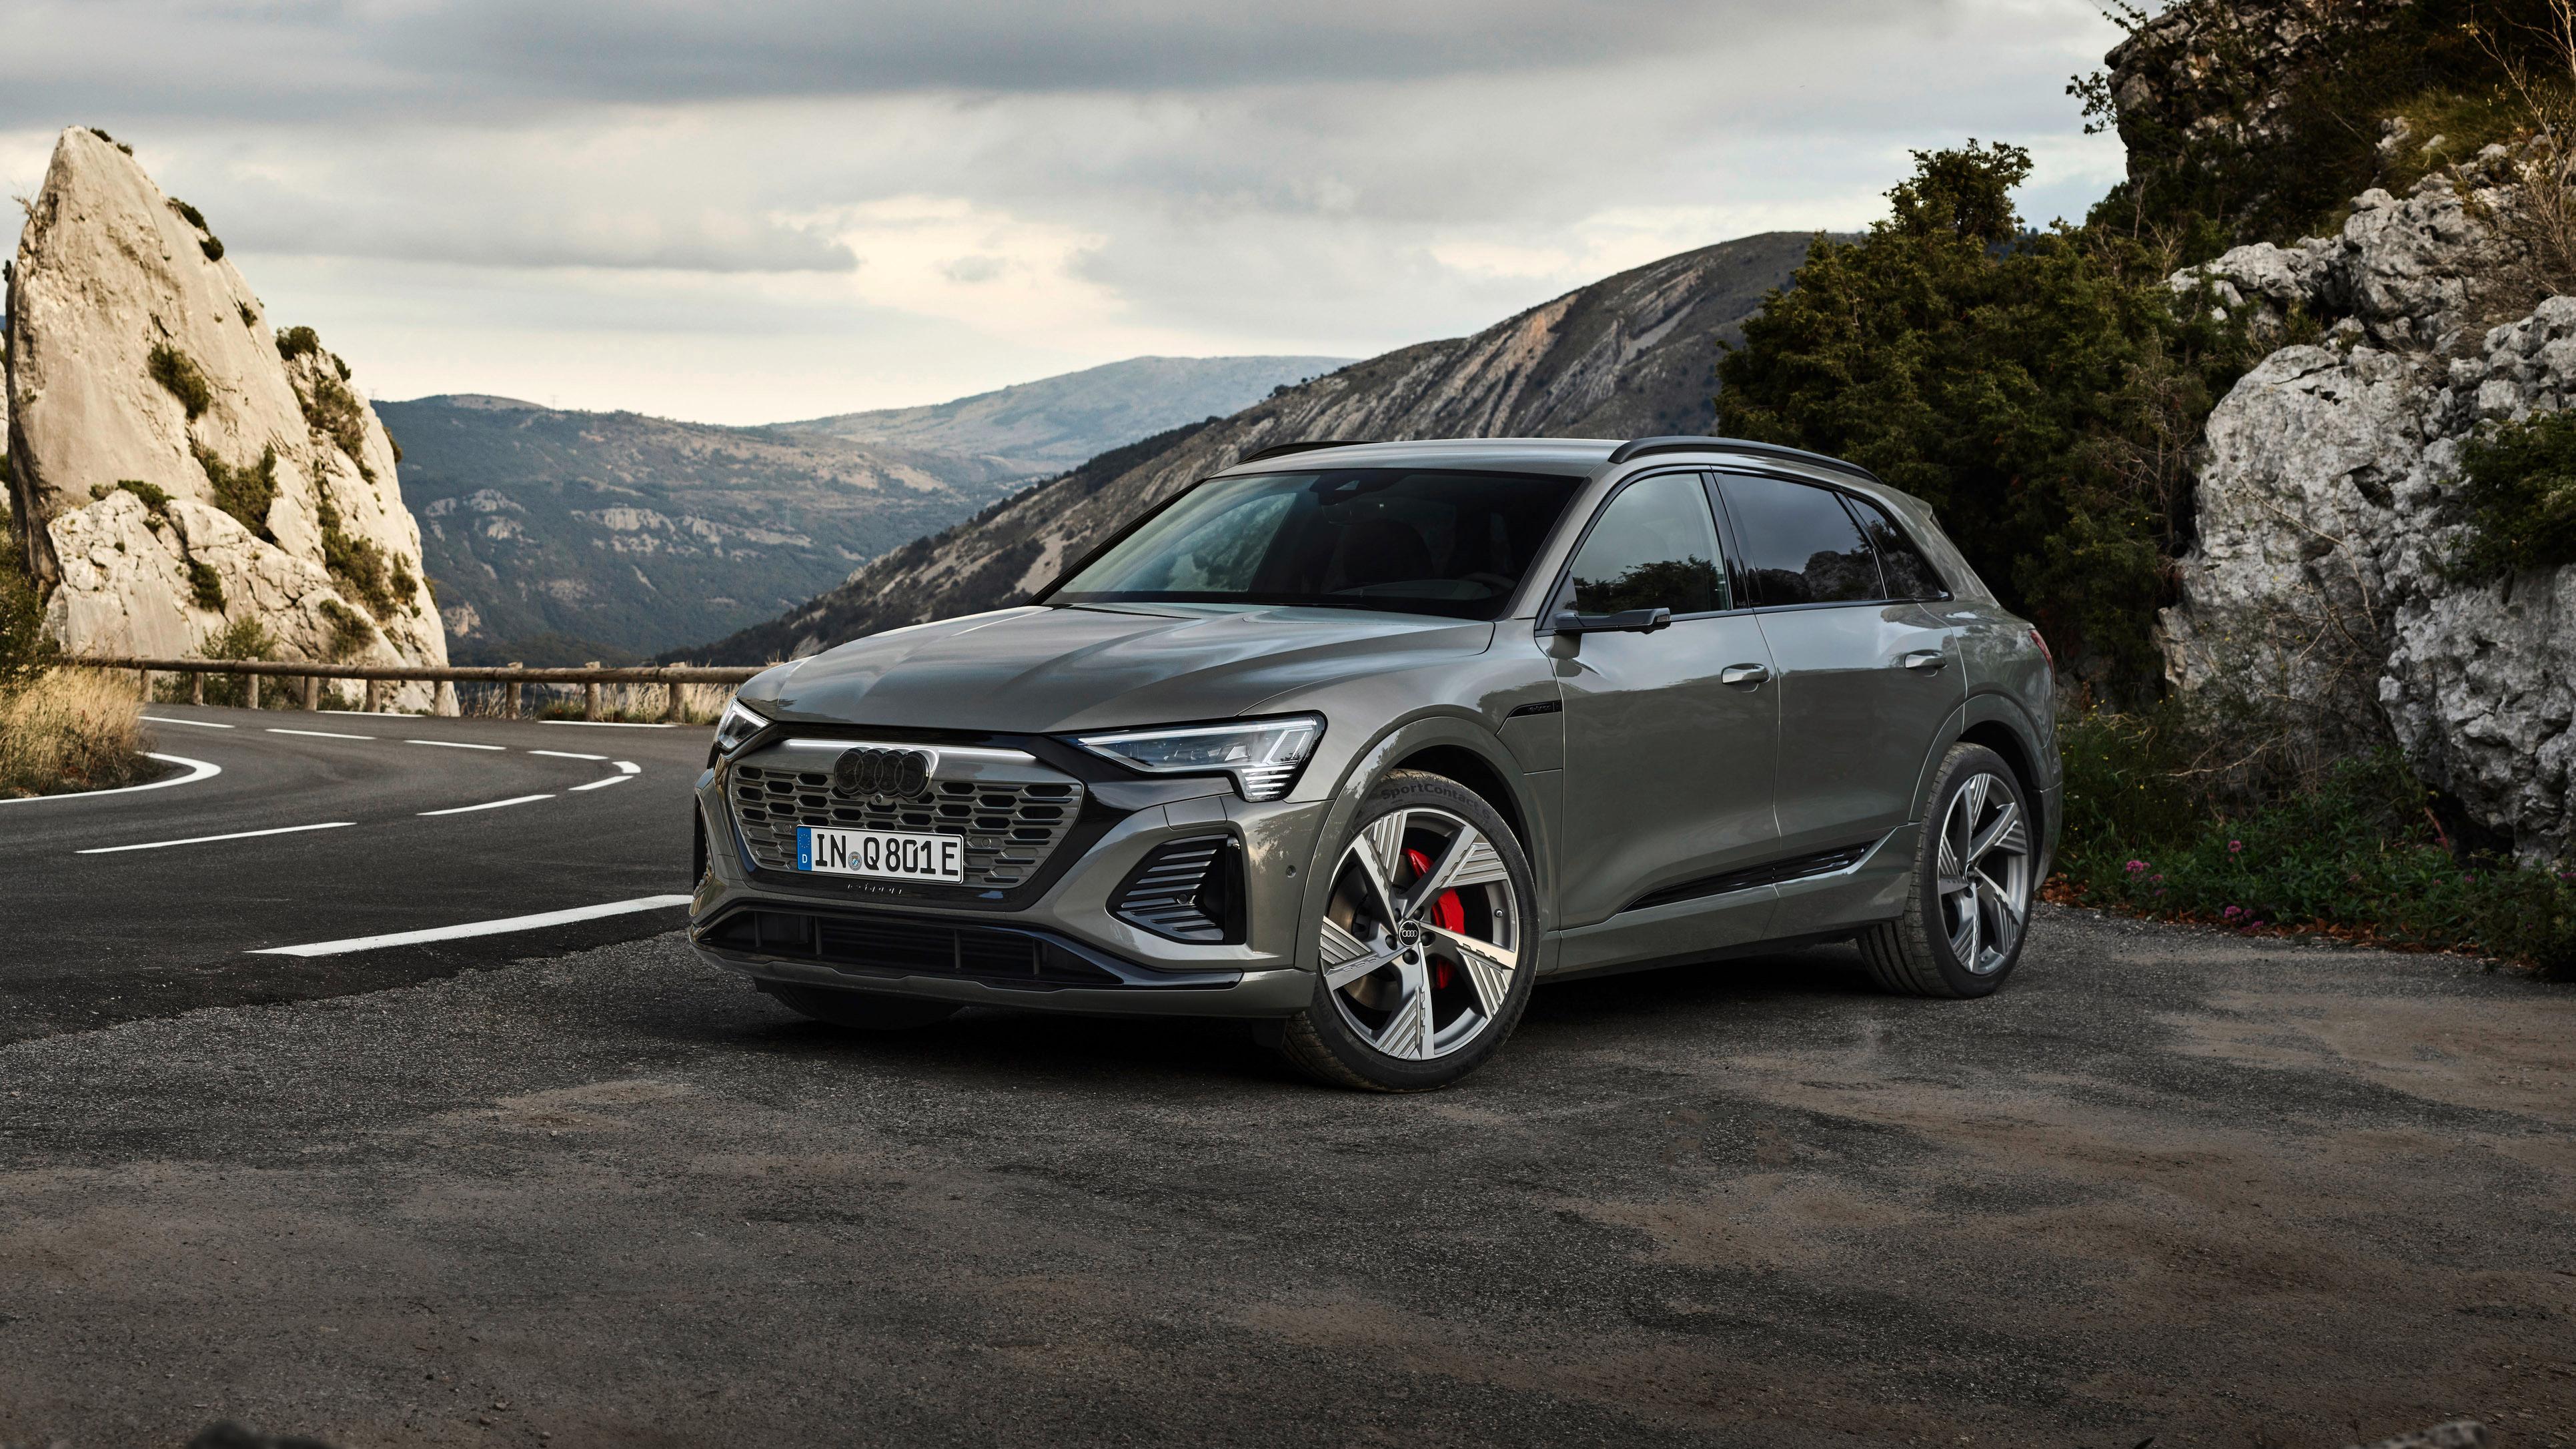 Audi e-tron bytter navn til Q8 e-tron og får blant annet nytt batteri, ny grill og bedre aerodynamikk. 